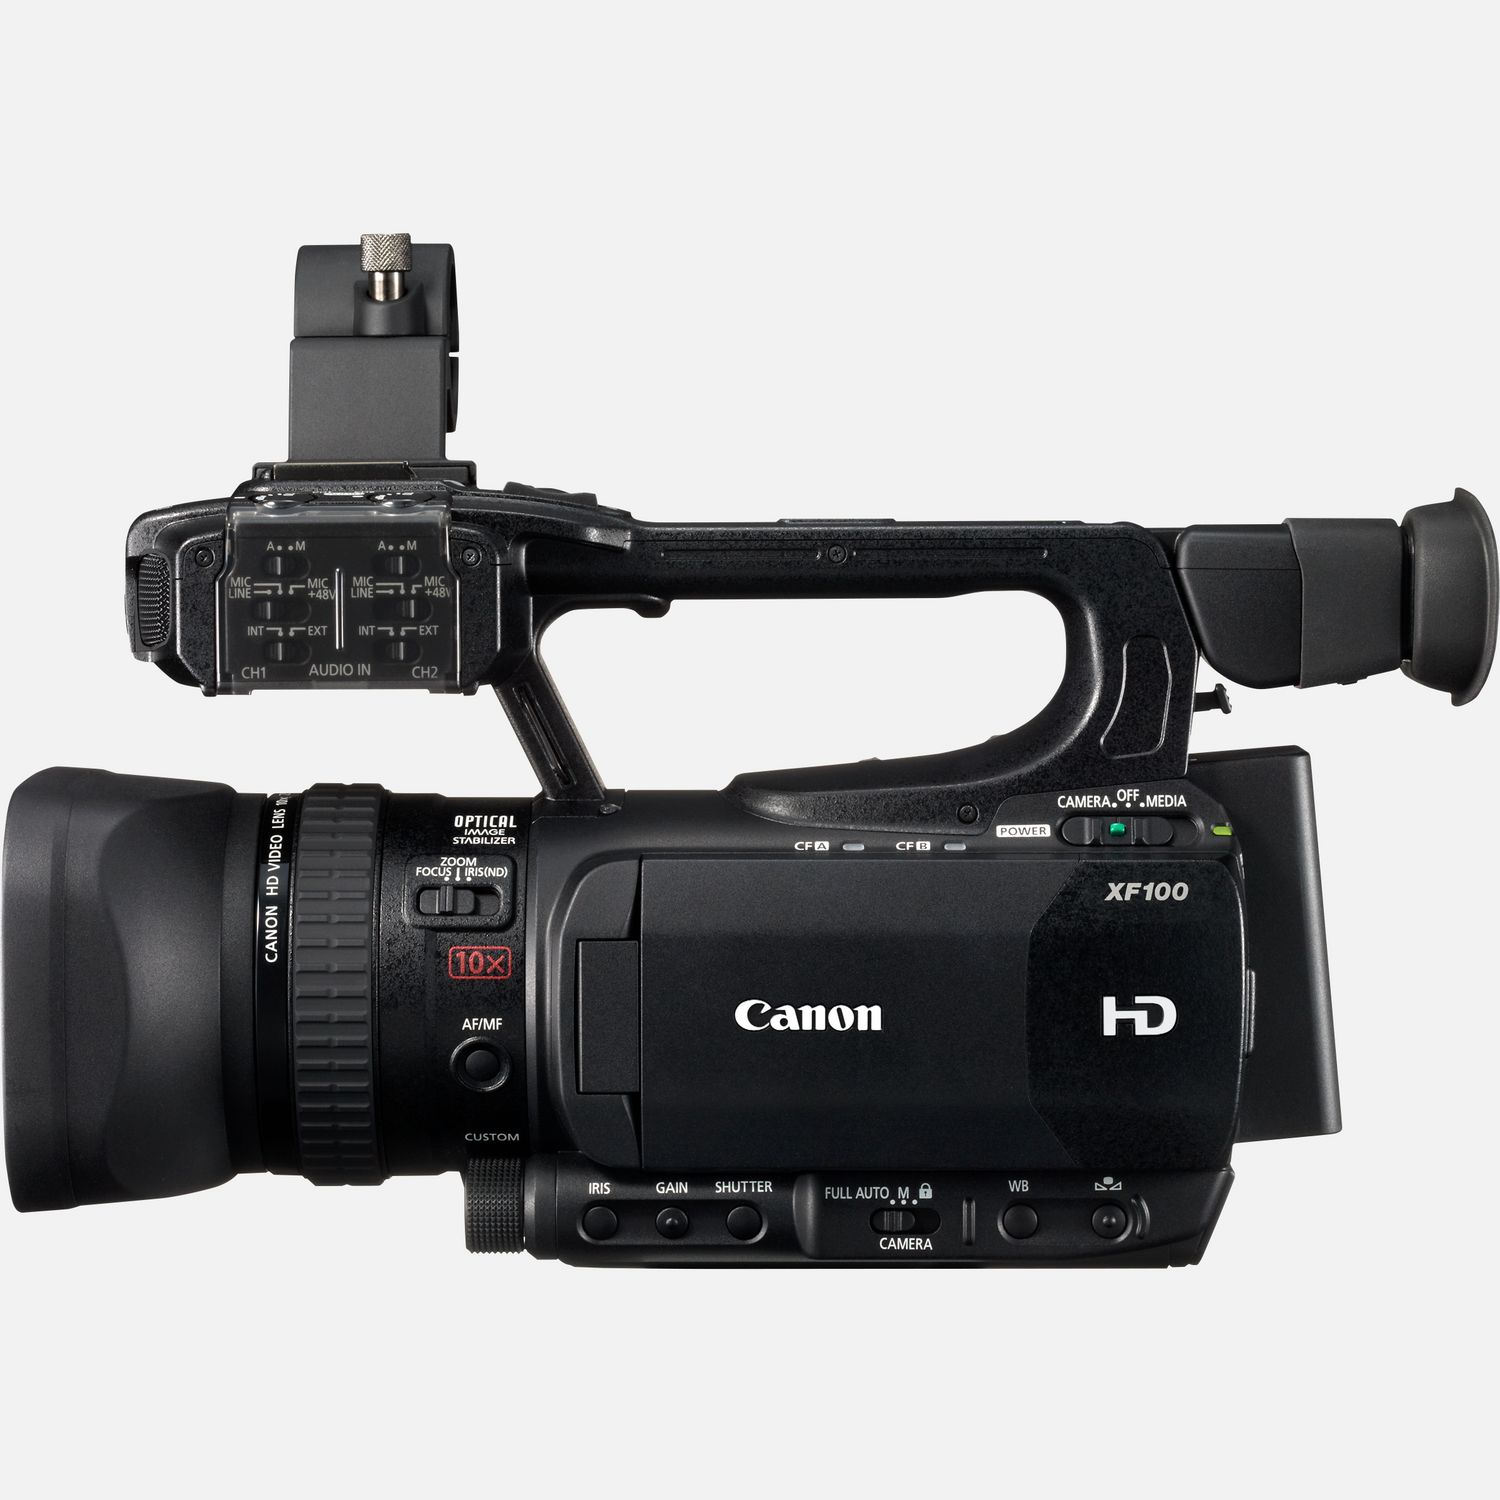 Cámaras de video y videocámaras - Canon Spain